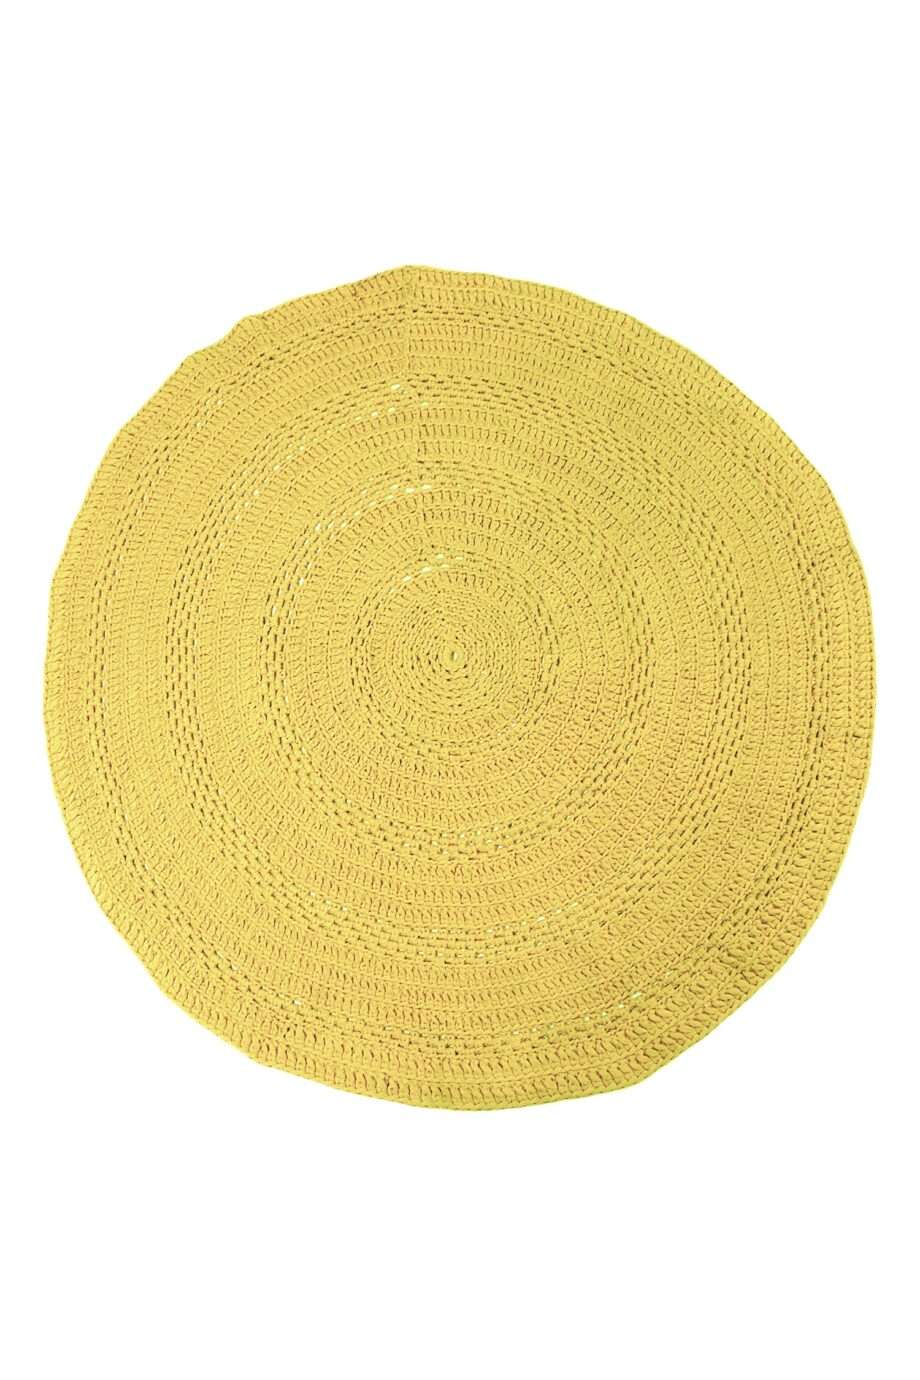 peony golden yellow crochet cotton rug xlarge